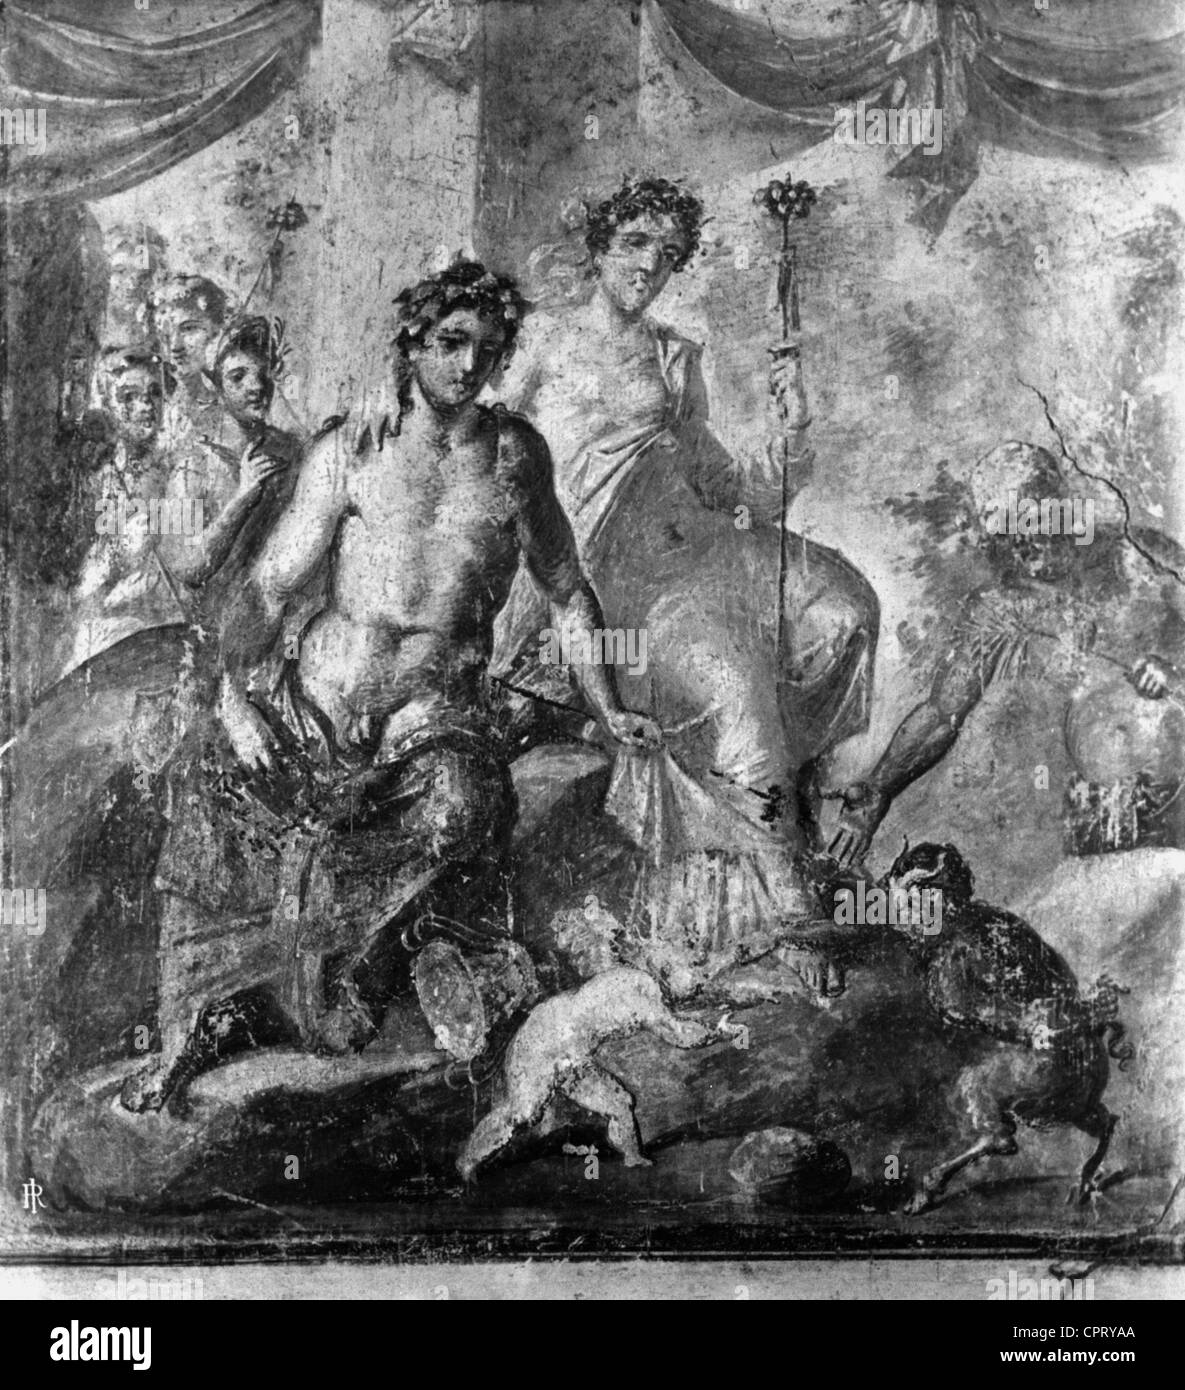 Pan, griechische Gottheit, volle Länge, im Streit mit Cupid, wahrscheinlich sitzt Apollo im Hintergrund (Phönix), Fresko in Pompeji, Domus Vettiorum, Stockfoto